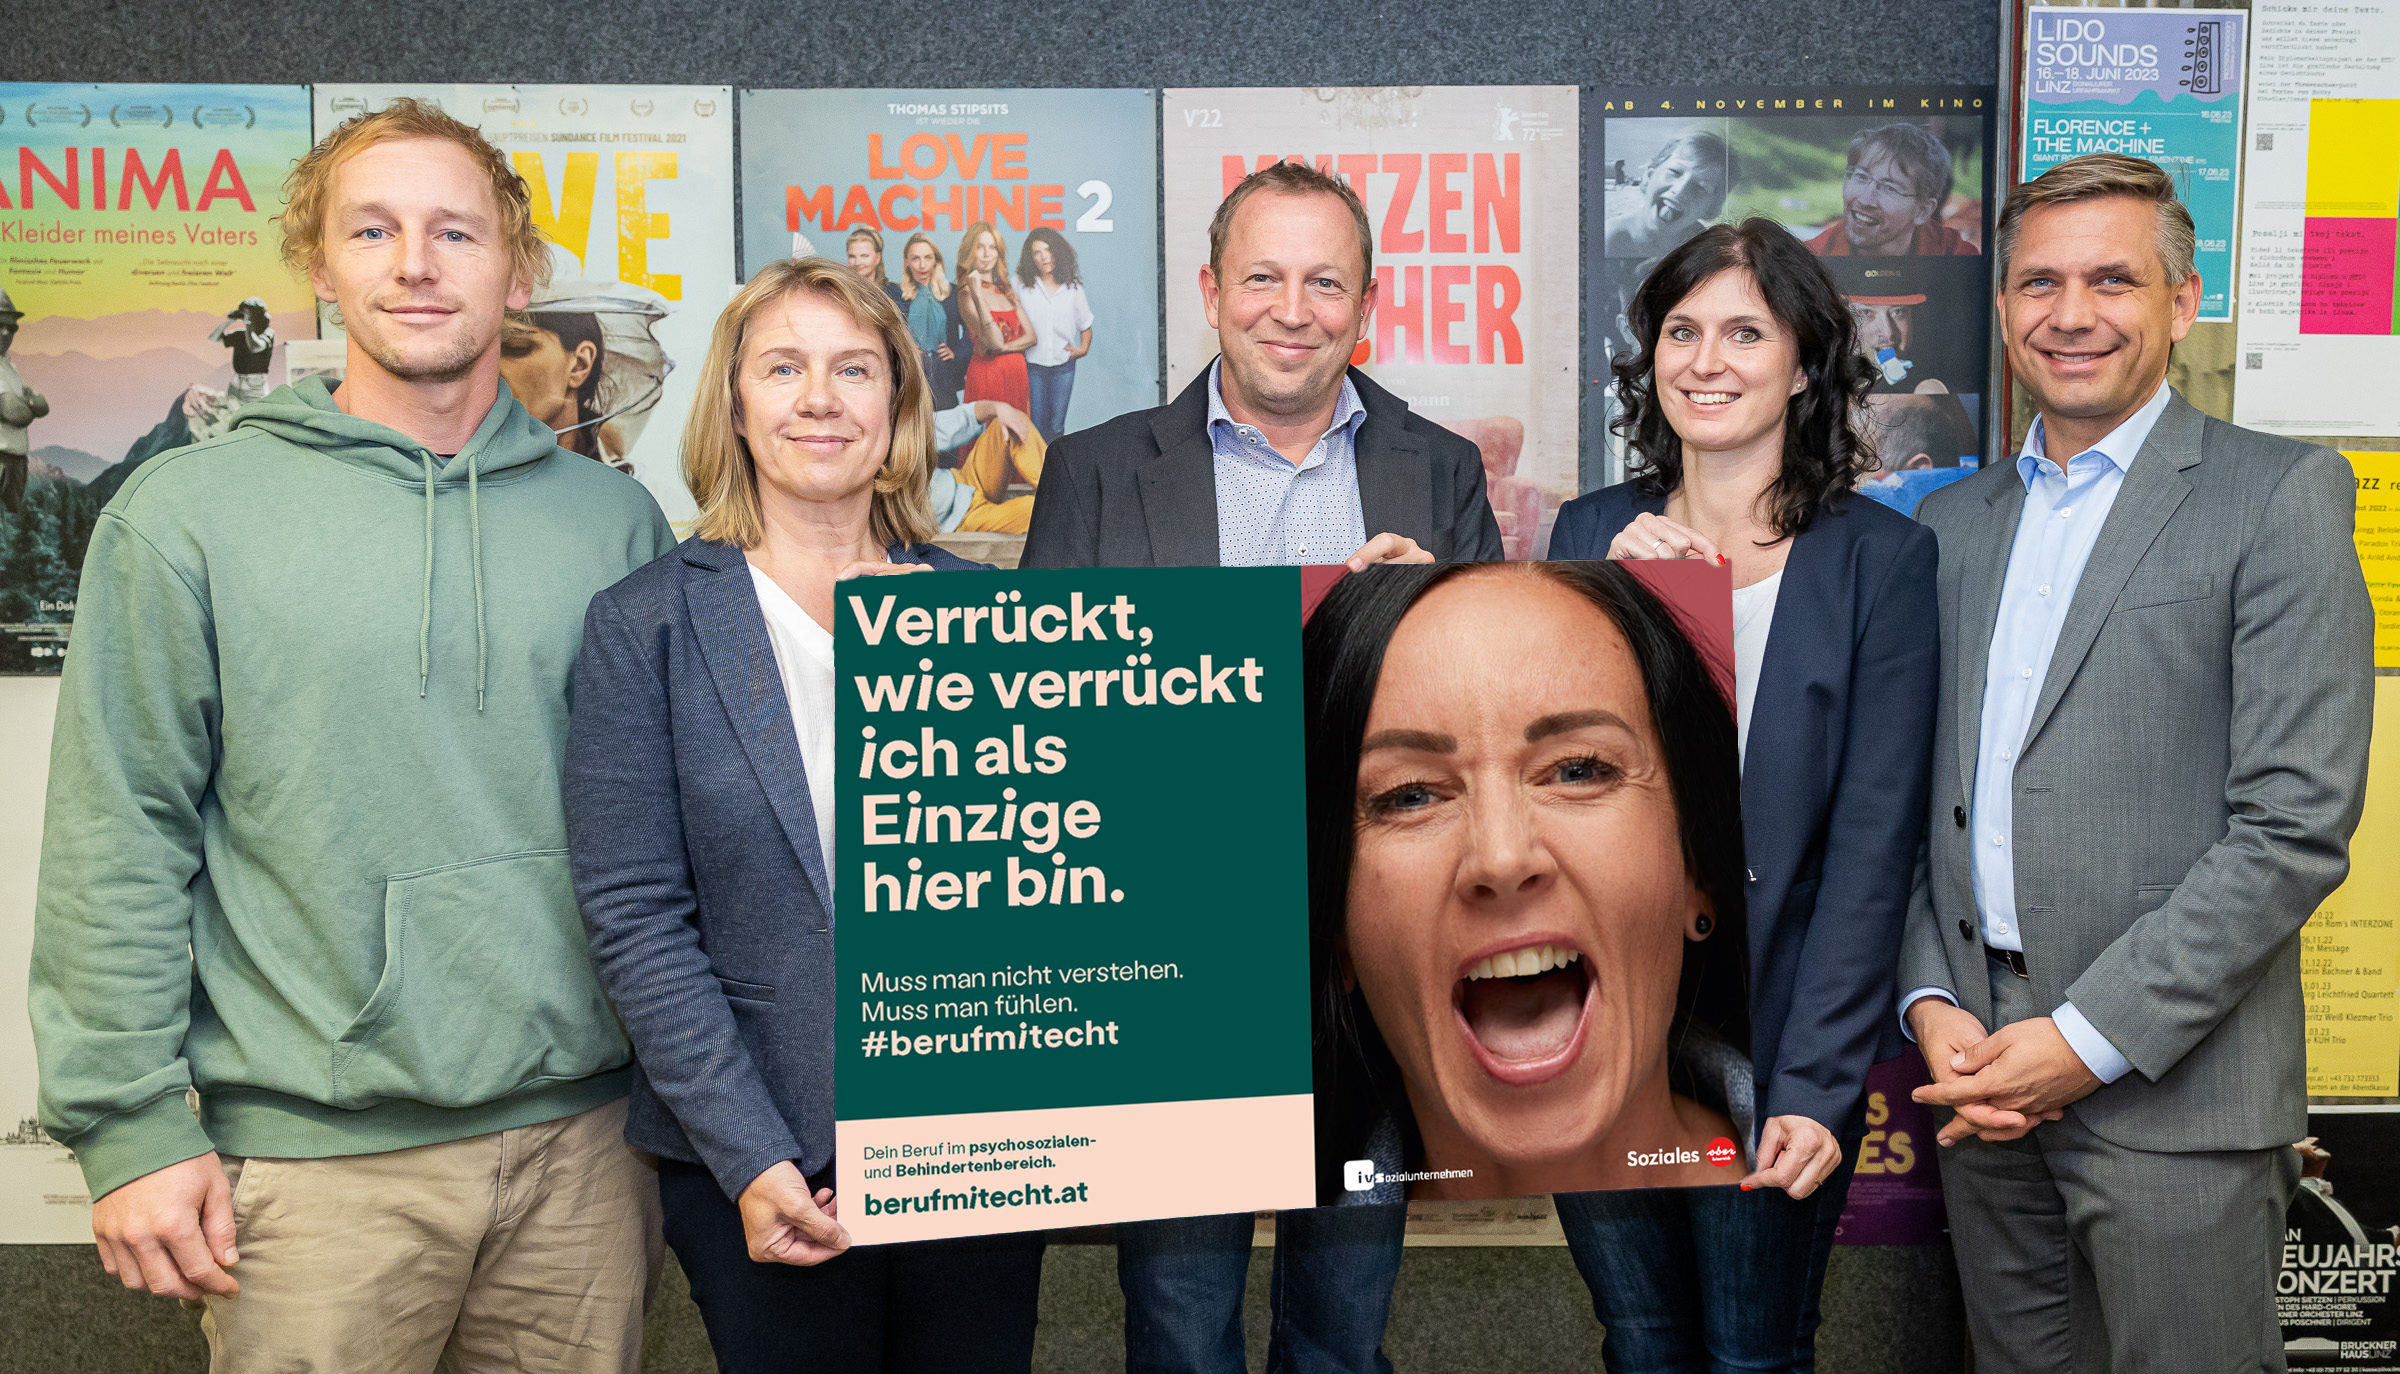 LR Wolfgang Hattmannsdorfer, Gernot Koren und Edith Zankl präsentieren gemeinsam mit Testimonials die neue Kampagne #BerufMitEcht.